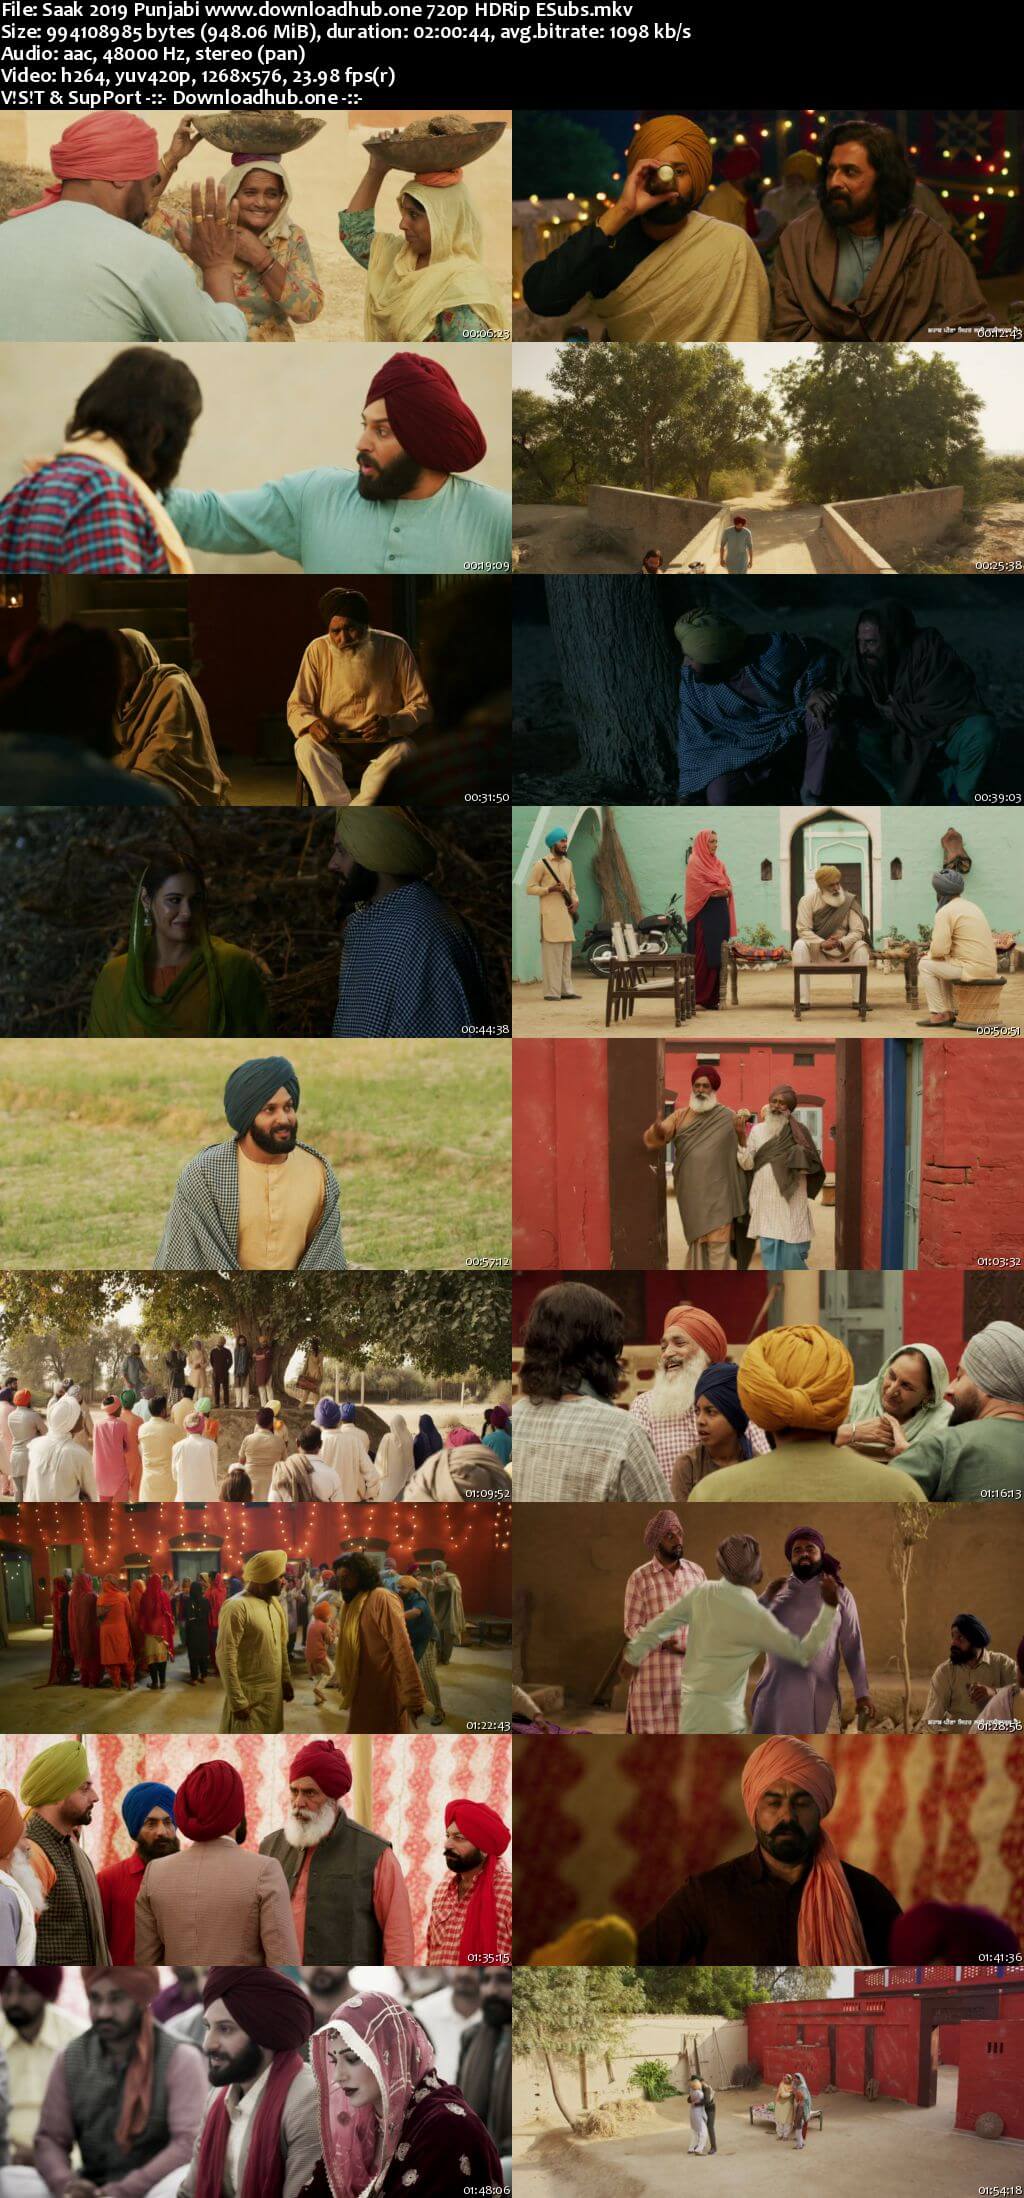 Saak 2019 Punjabi 720p HDRip ESubs